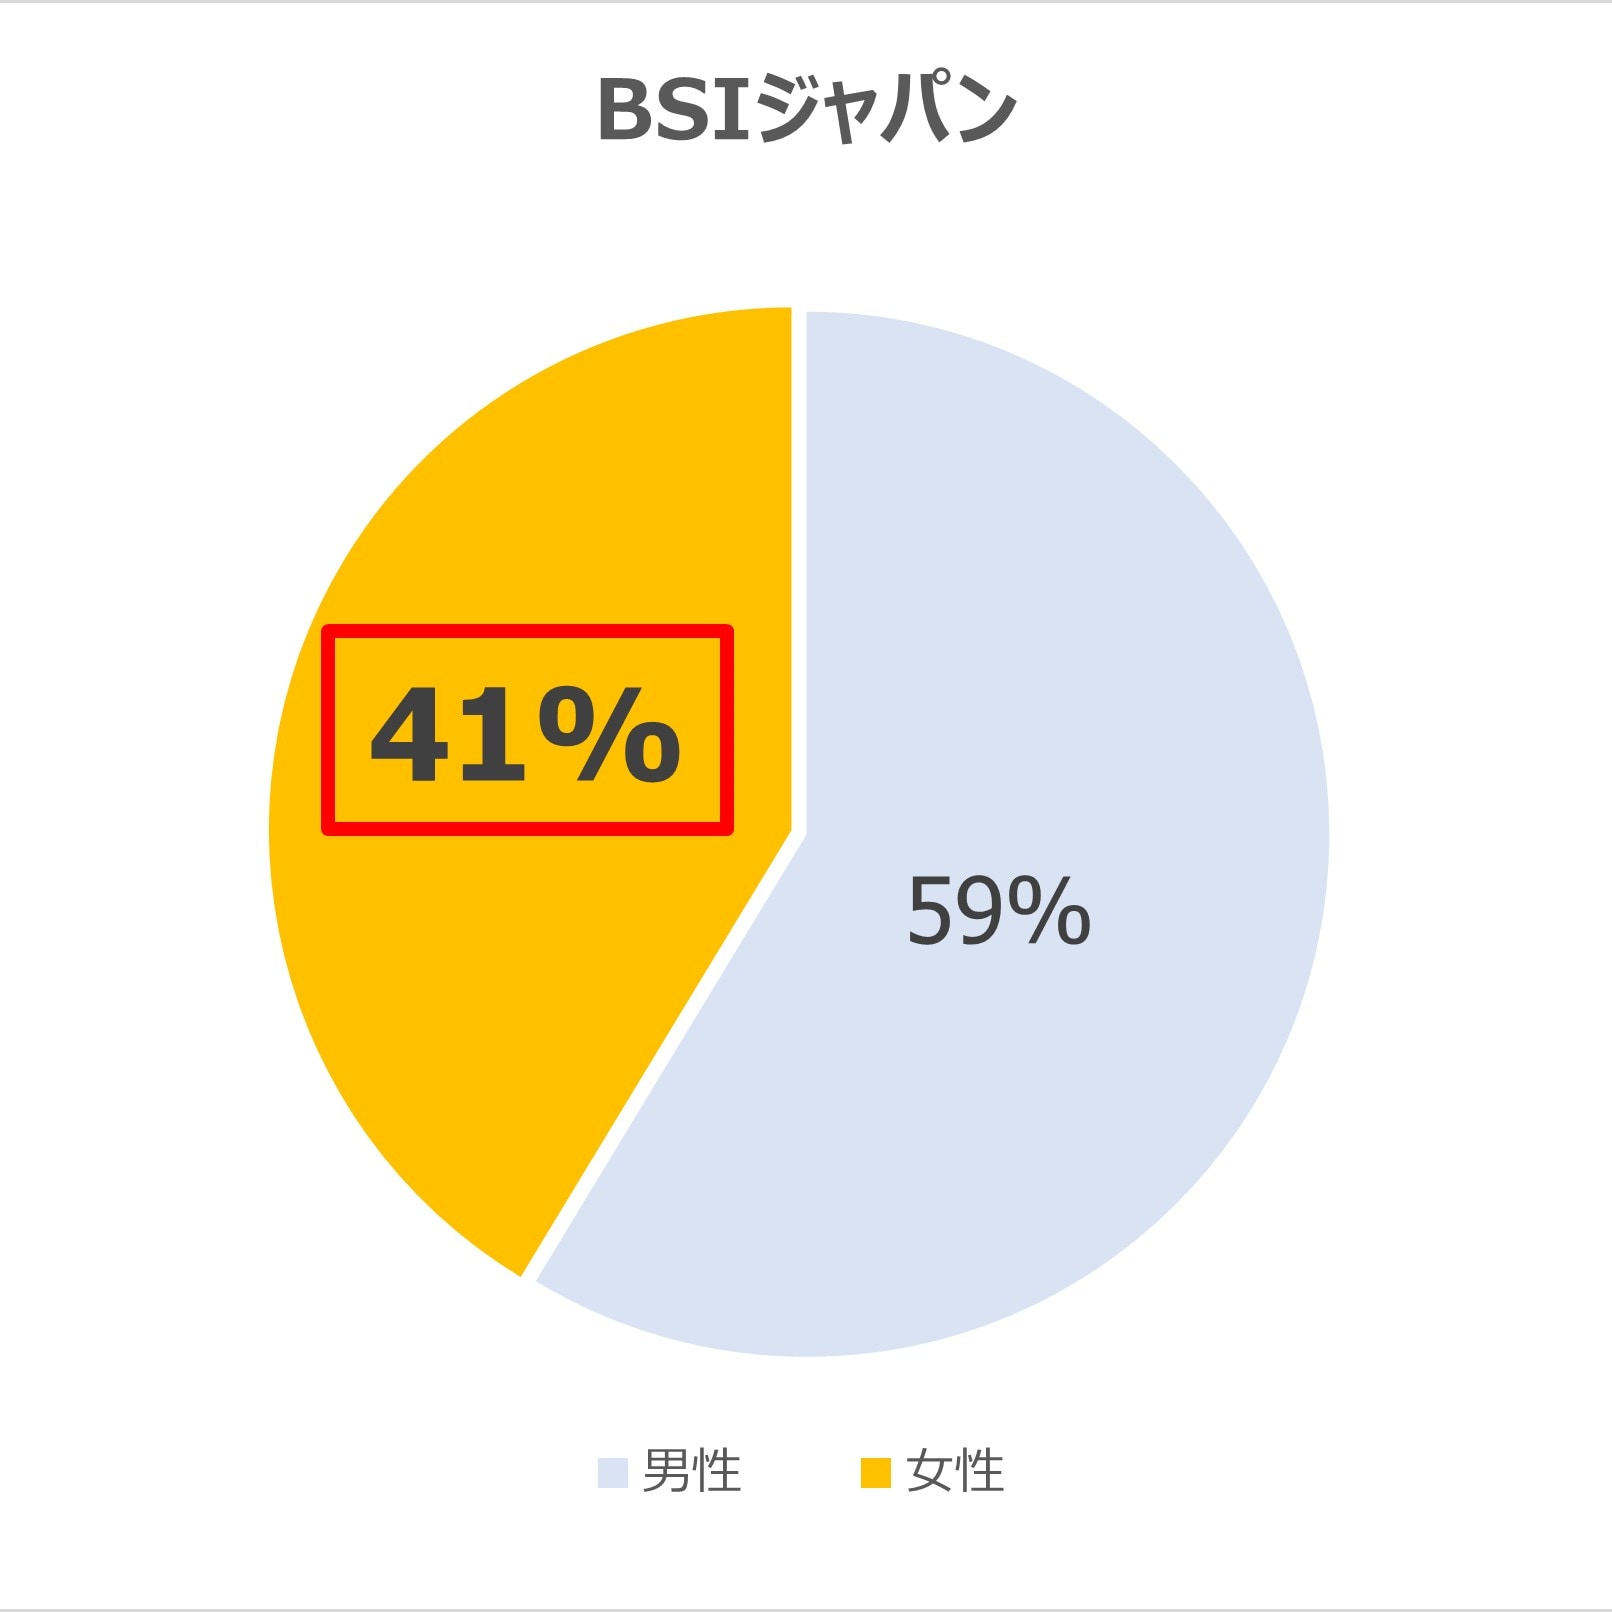 BSIジャパン女性社員比率